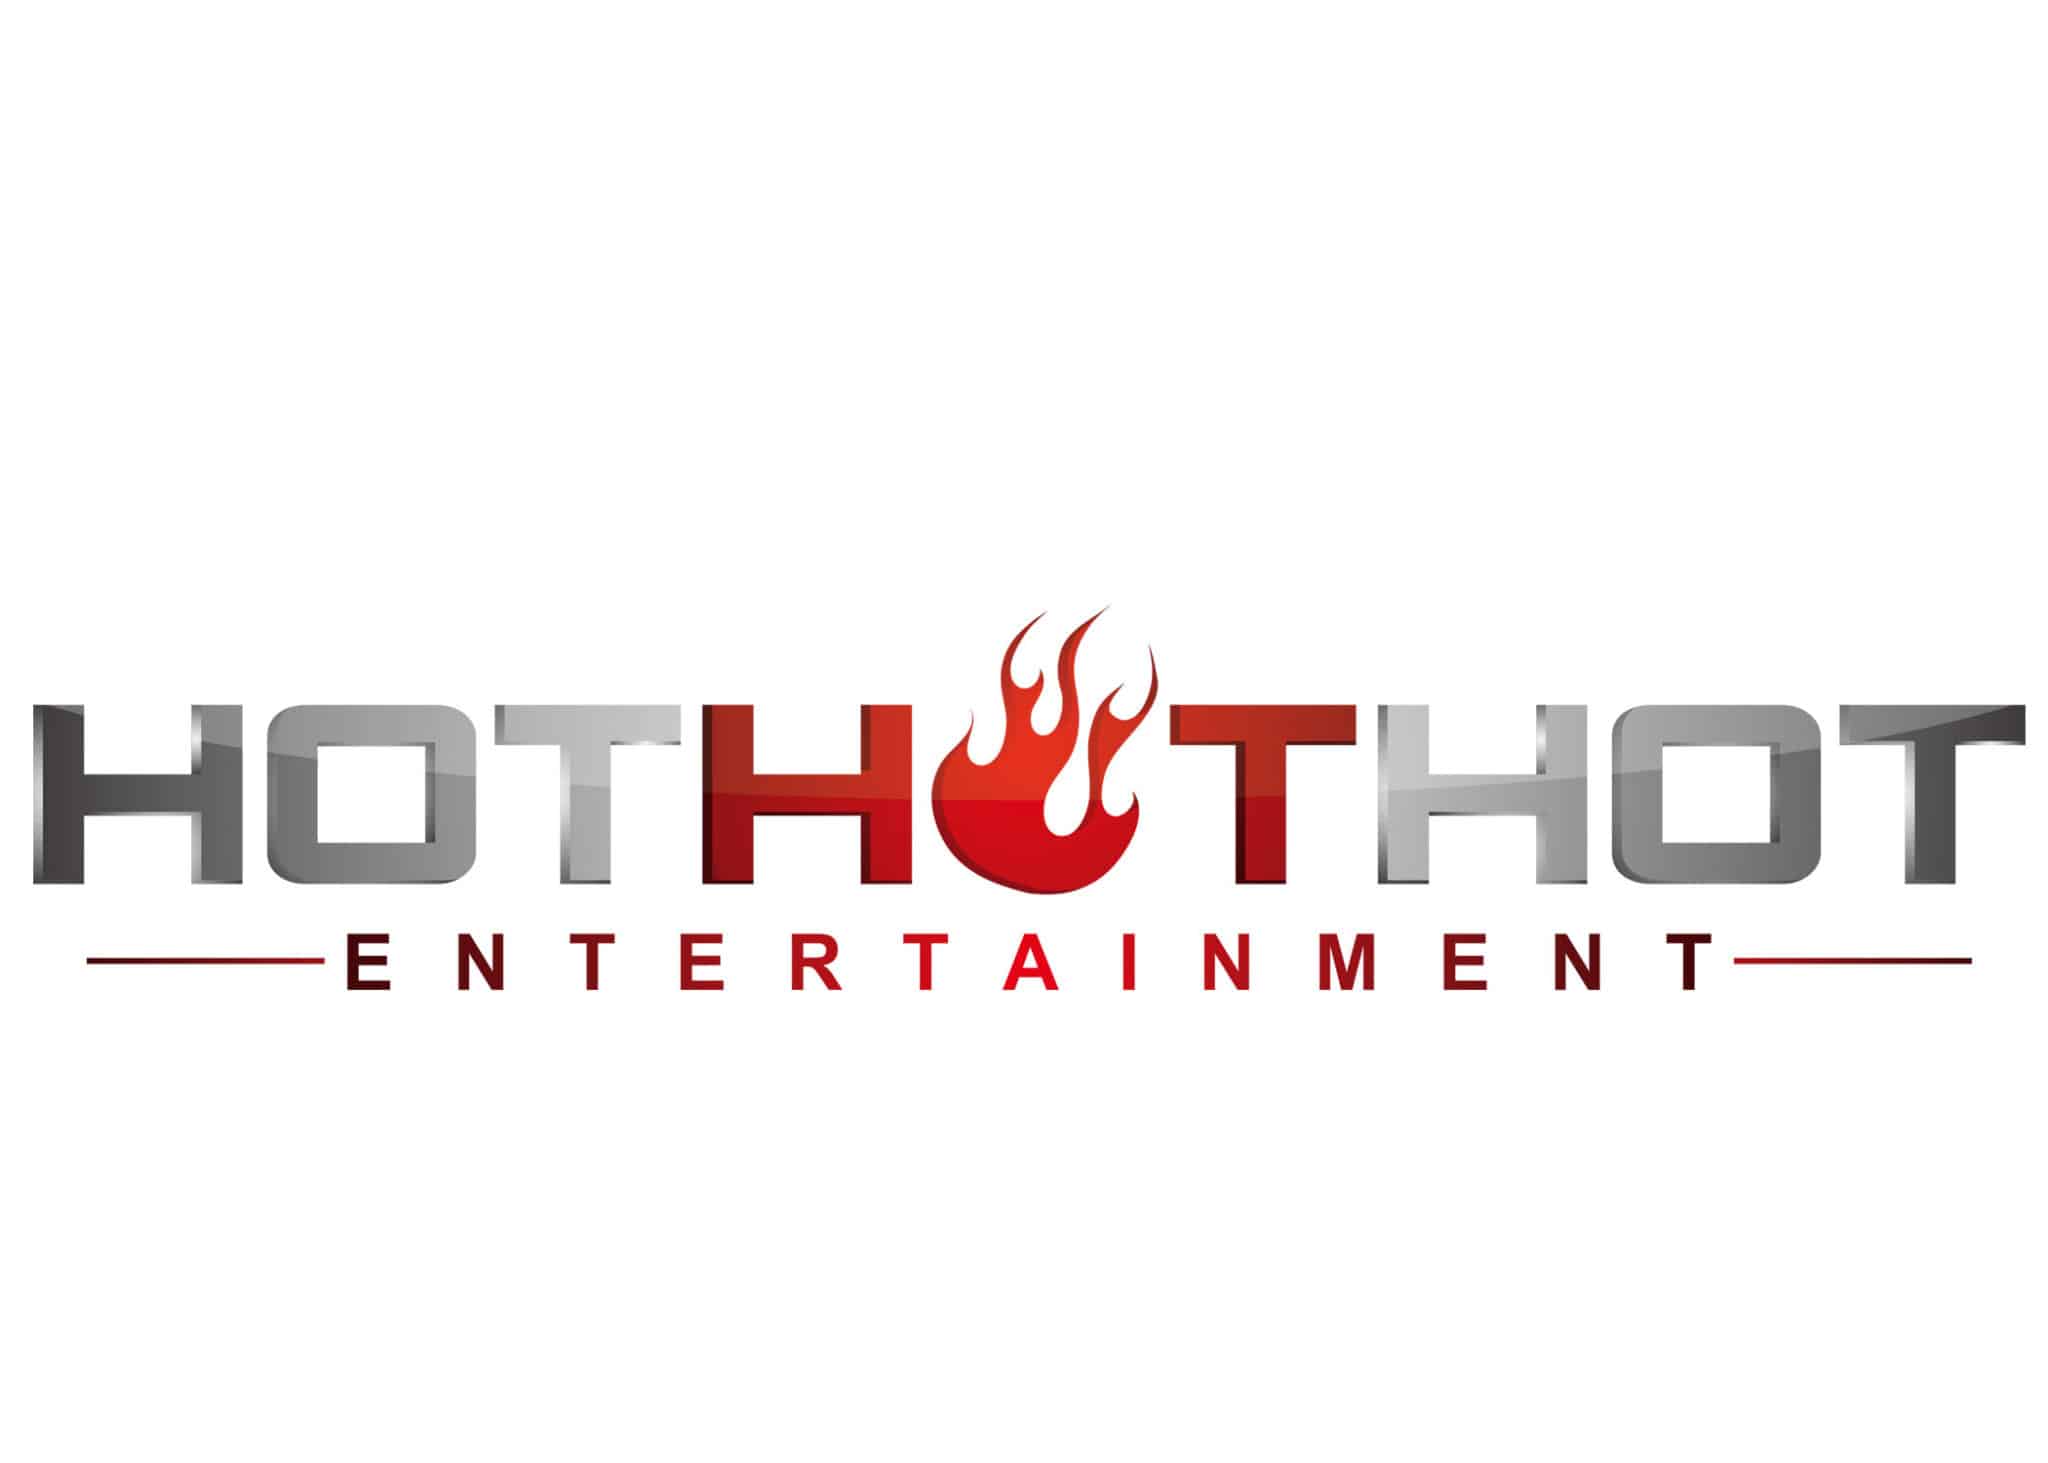 Hot Hot Hot Entertainment